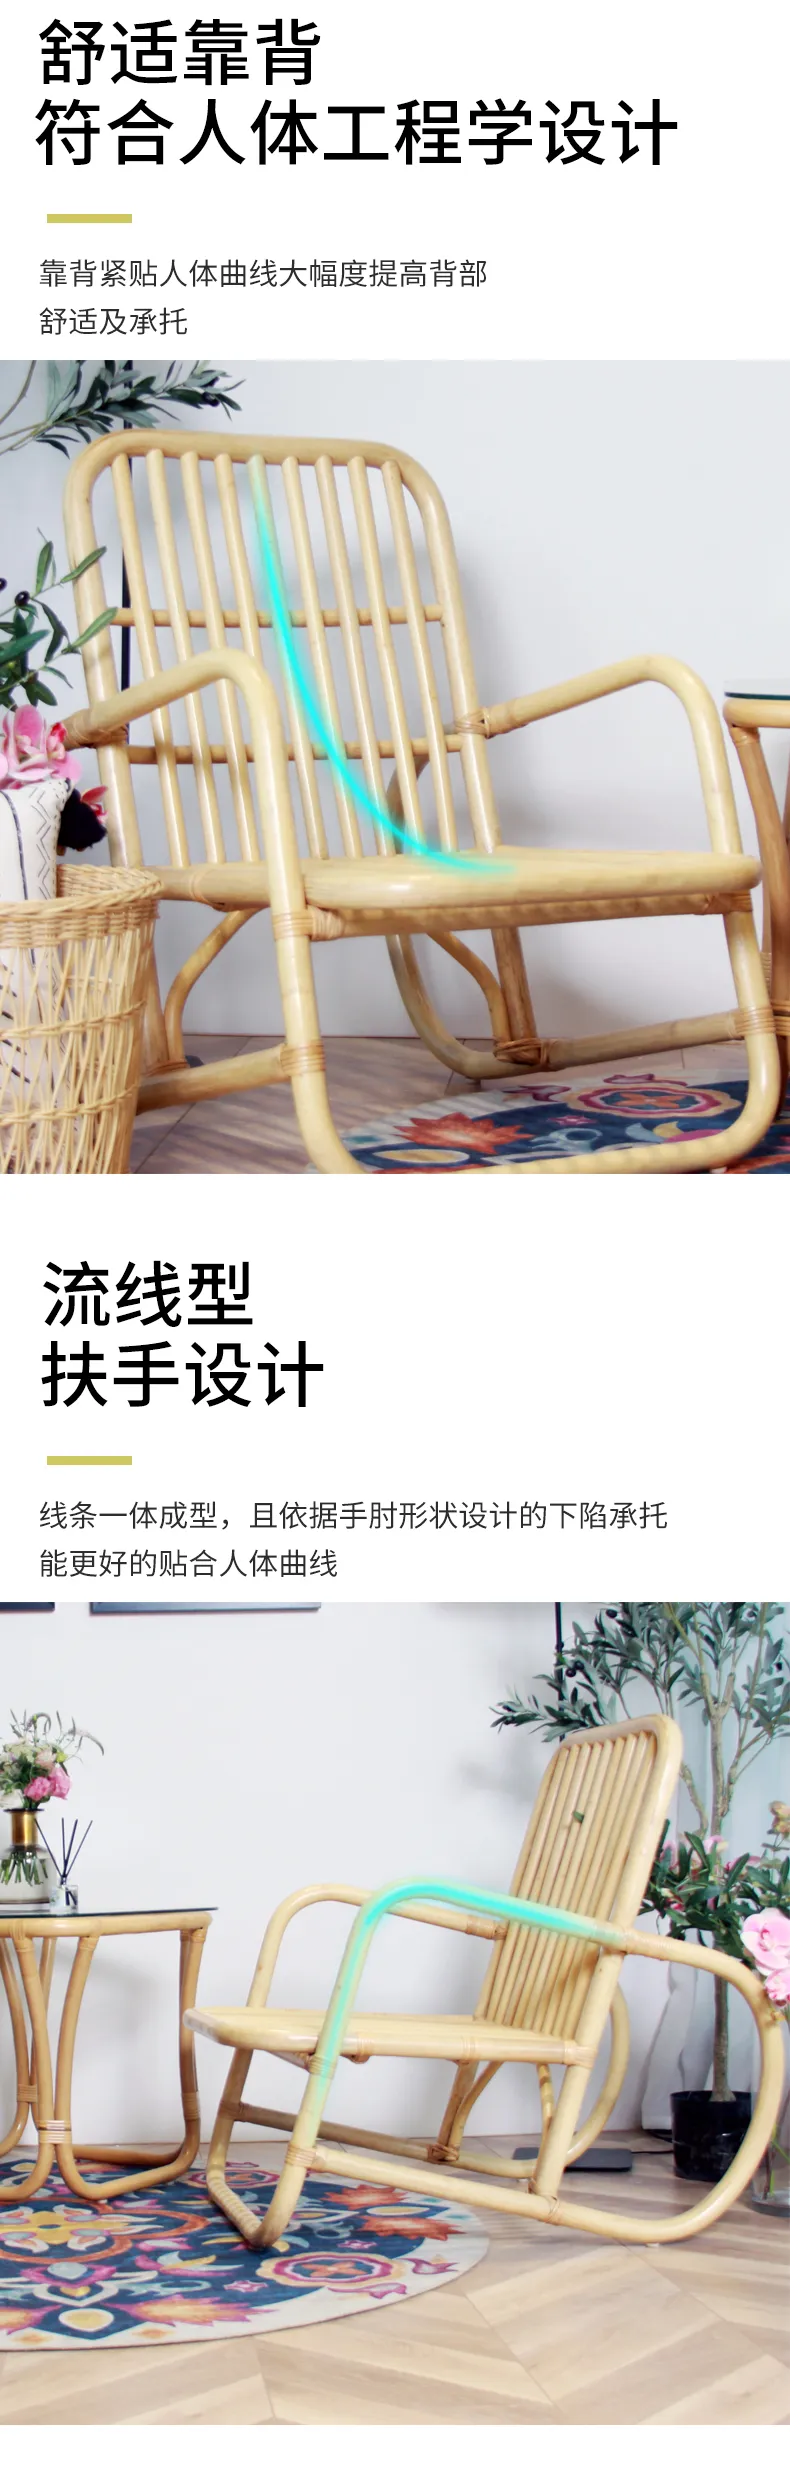 华松居 阳台藤椅系列印尼进口玛瑙藤 纯手工编织藤椅家具#罗马椅(图7)